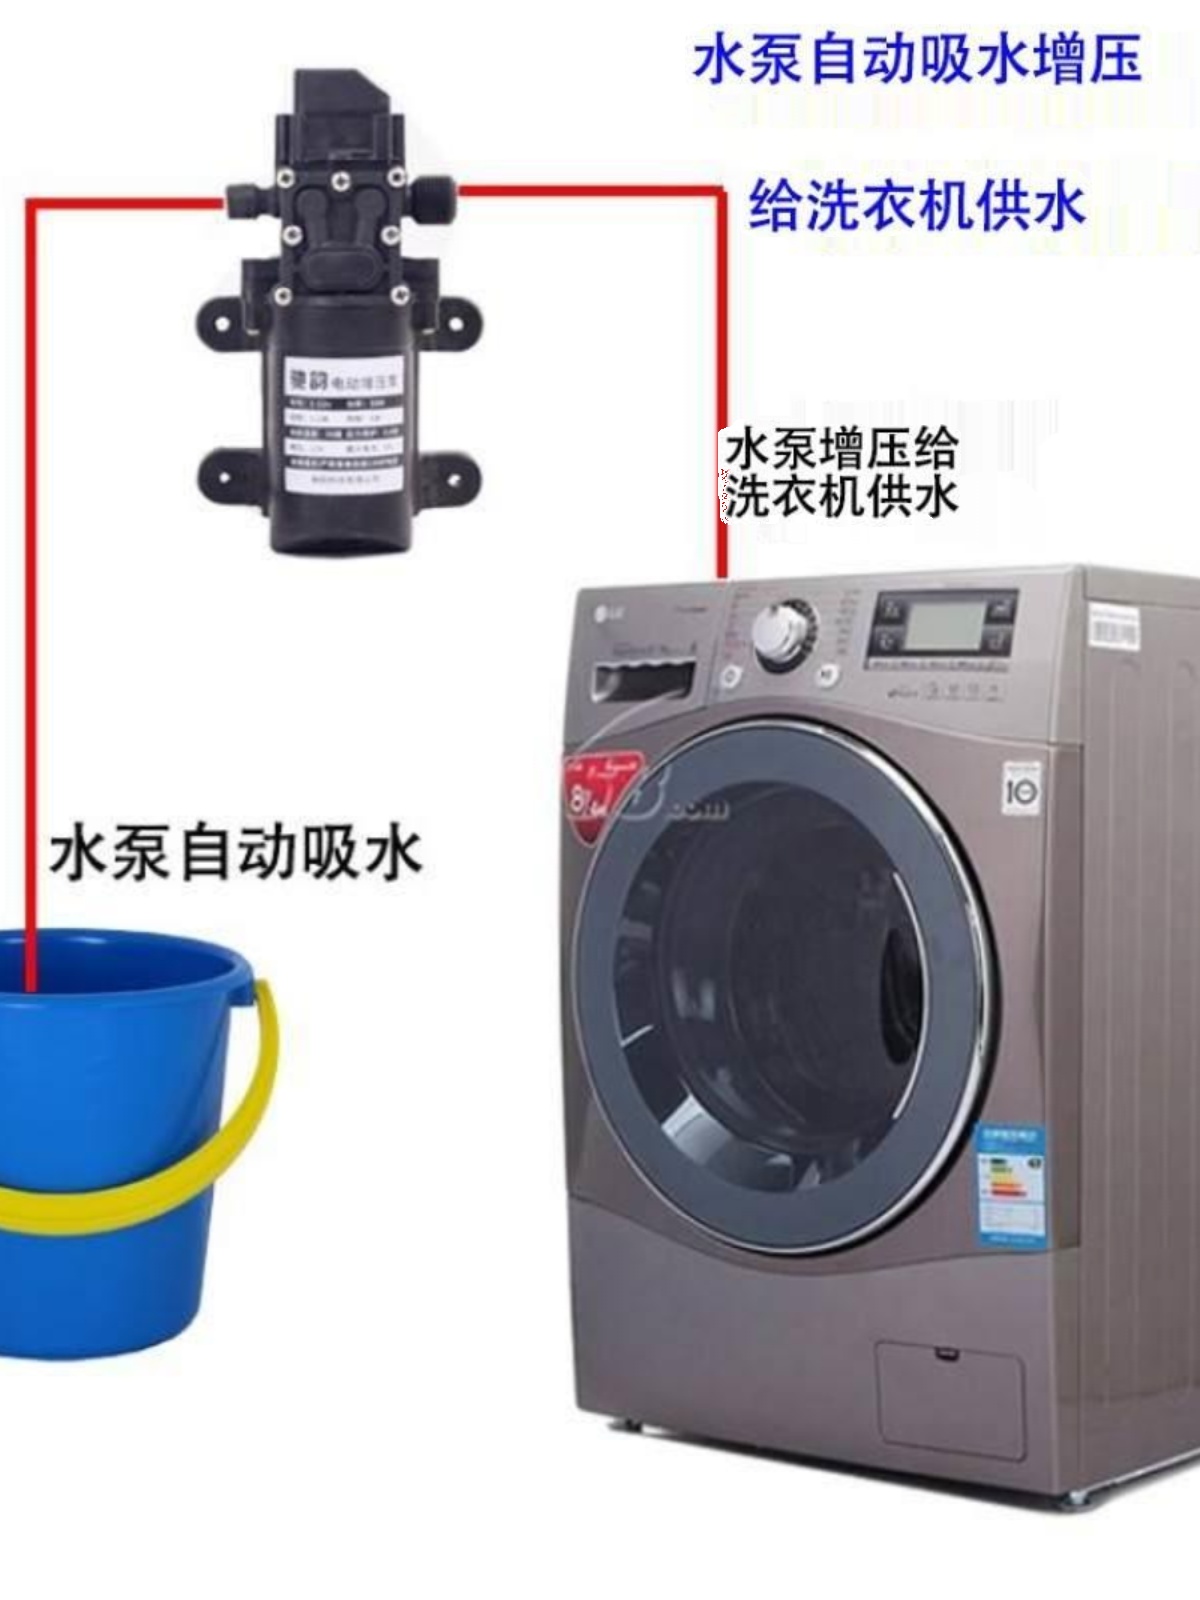 水龙头电热水器自洗澡式抽水泵吸12v水泵洗衣机自吸泵器增压泵